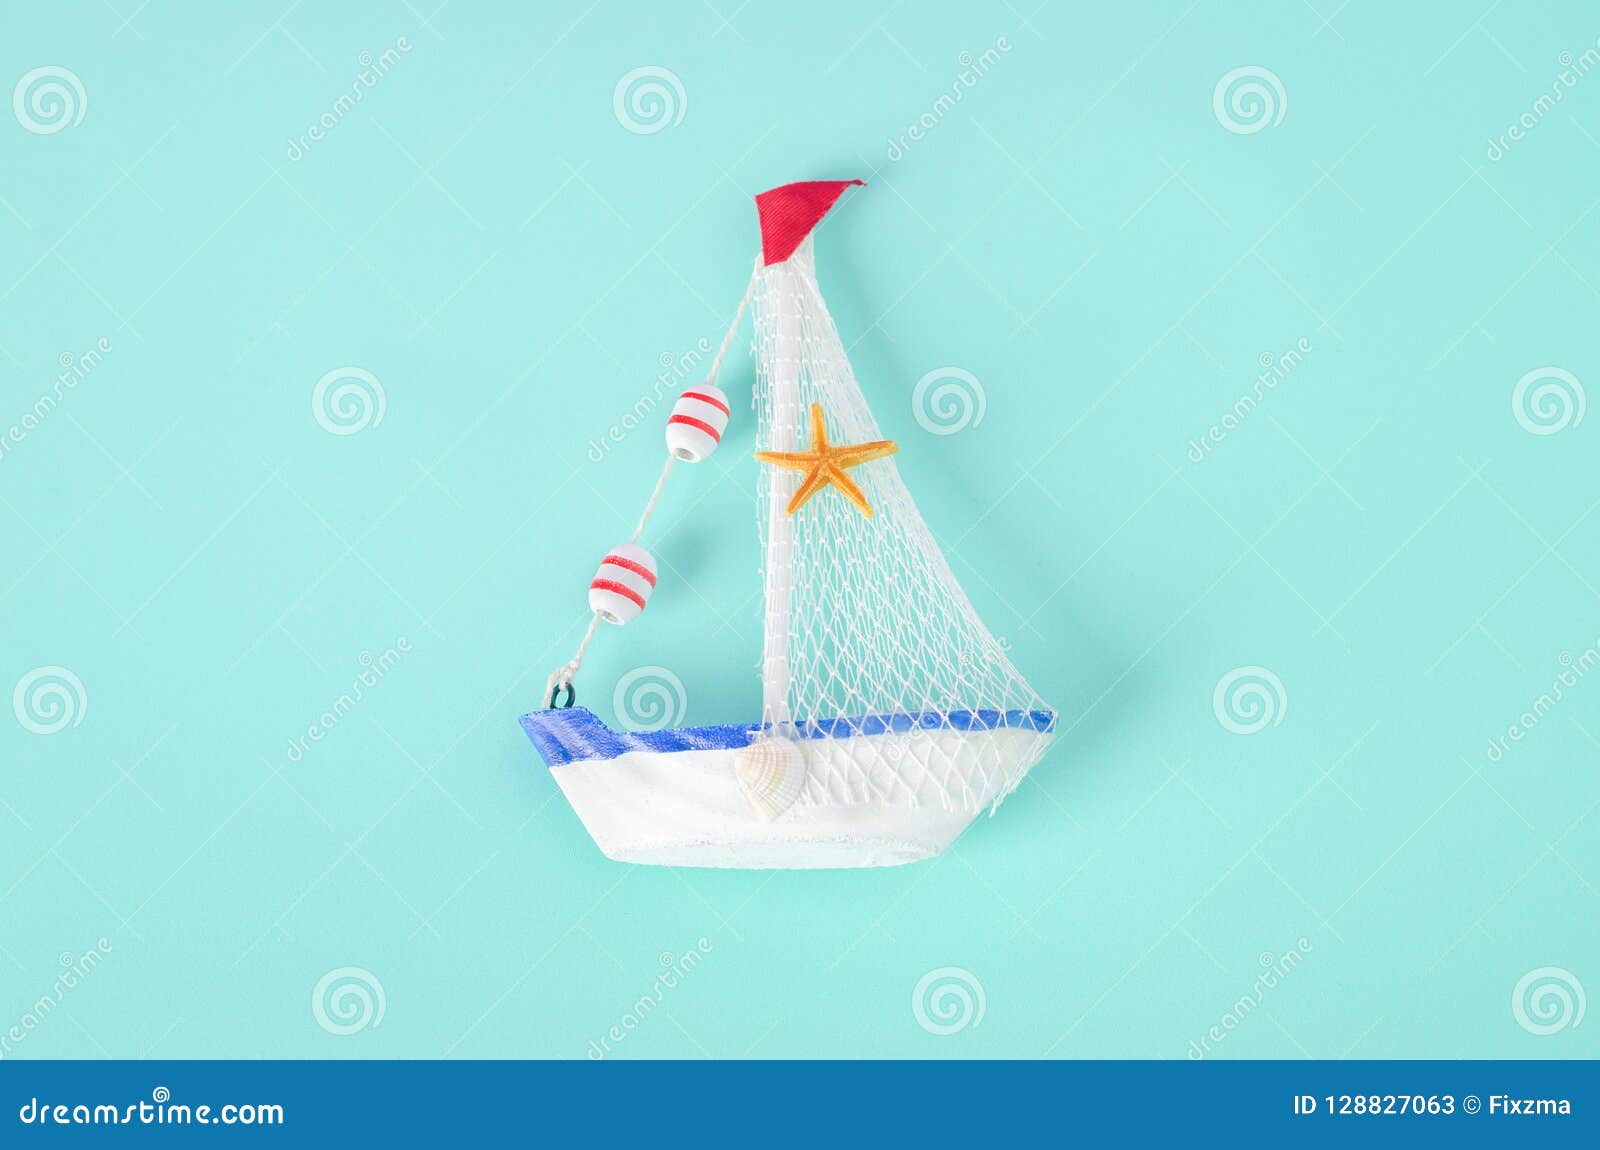 Antikviteten seglar fartygleksakmodellen med repet och snäckskalet på vit och. Antikviteten seglar fartygleksakmodellen med repet och snäckskalet på vit- och blåttbakgrund - nautisk bakgrund